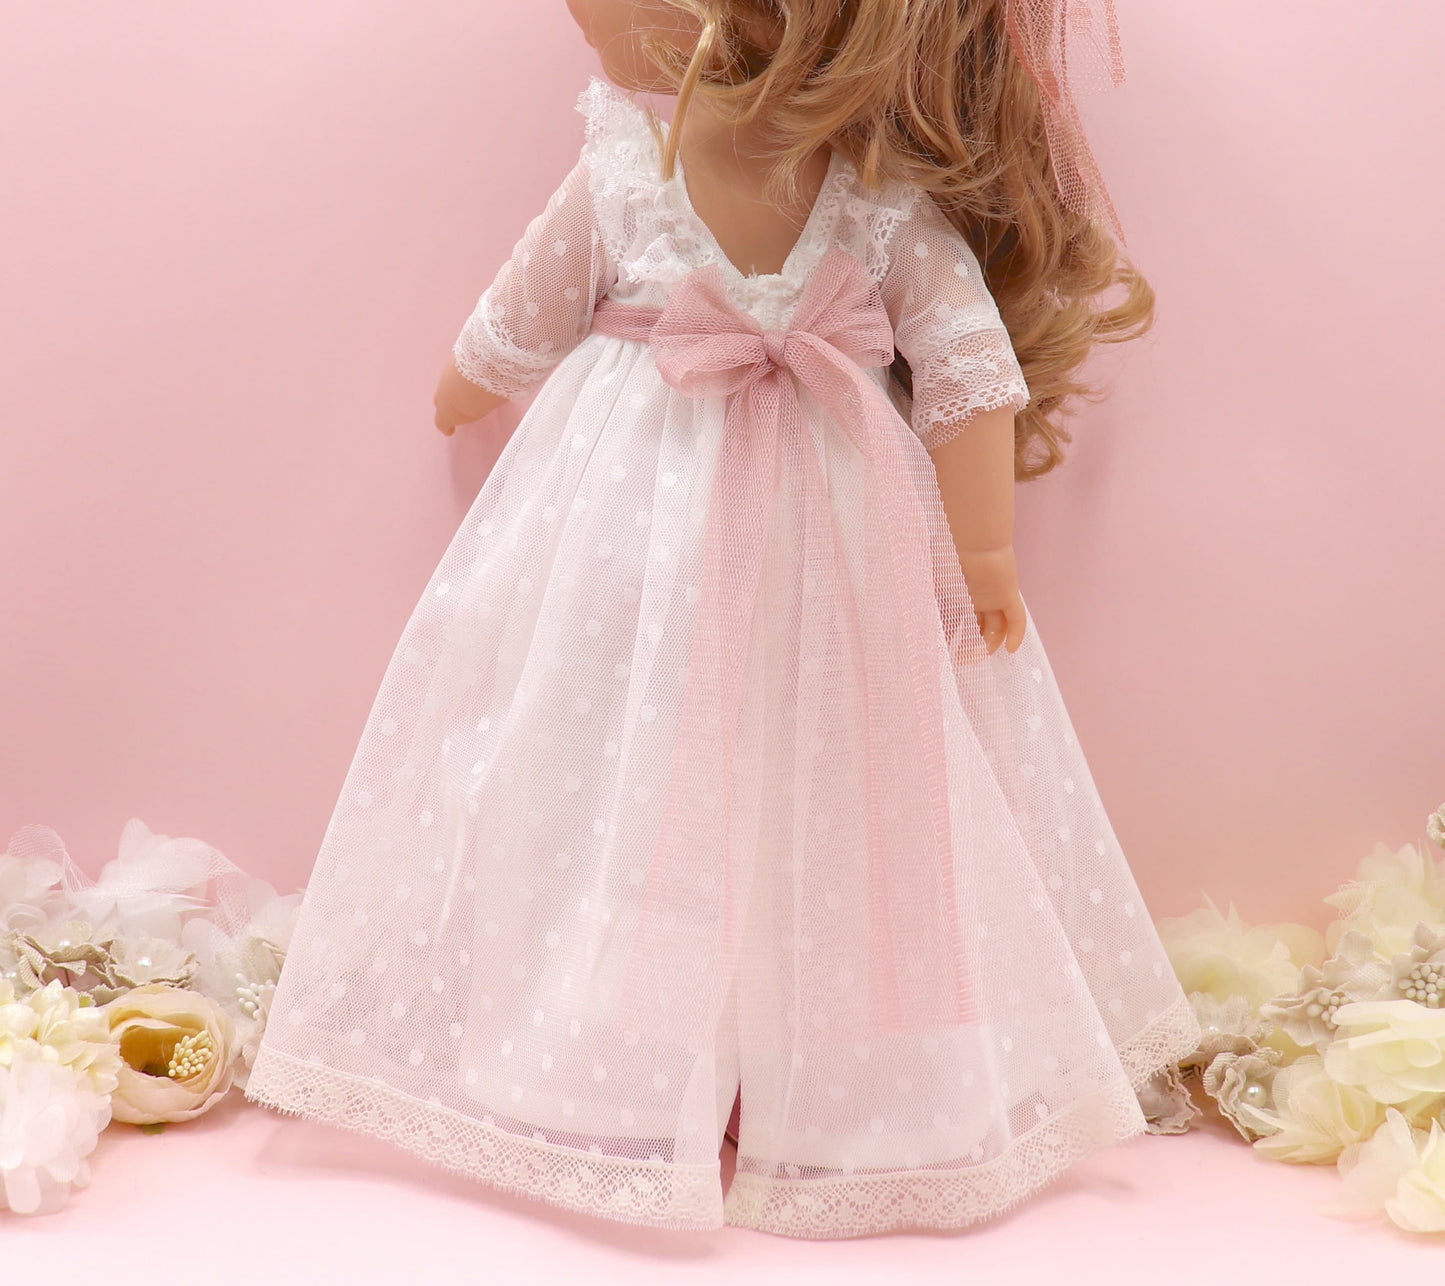 Muñeca de comunión personalizada con vestido Gala